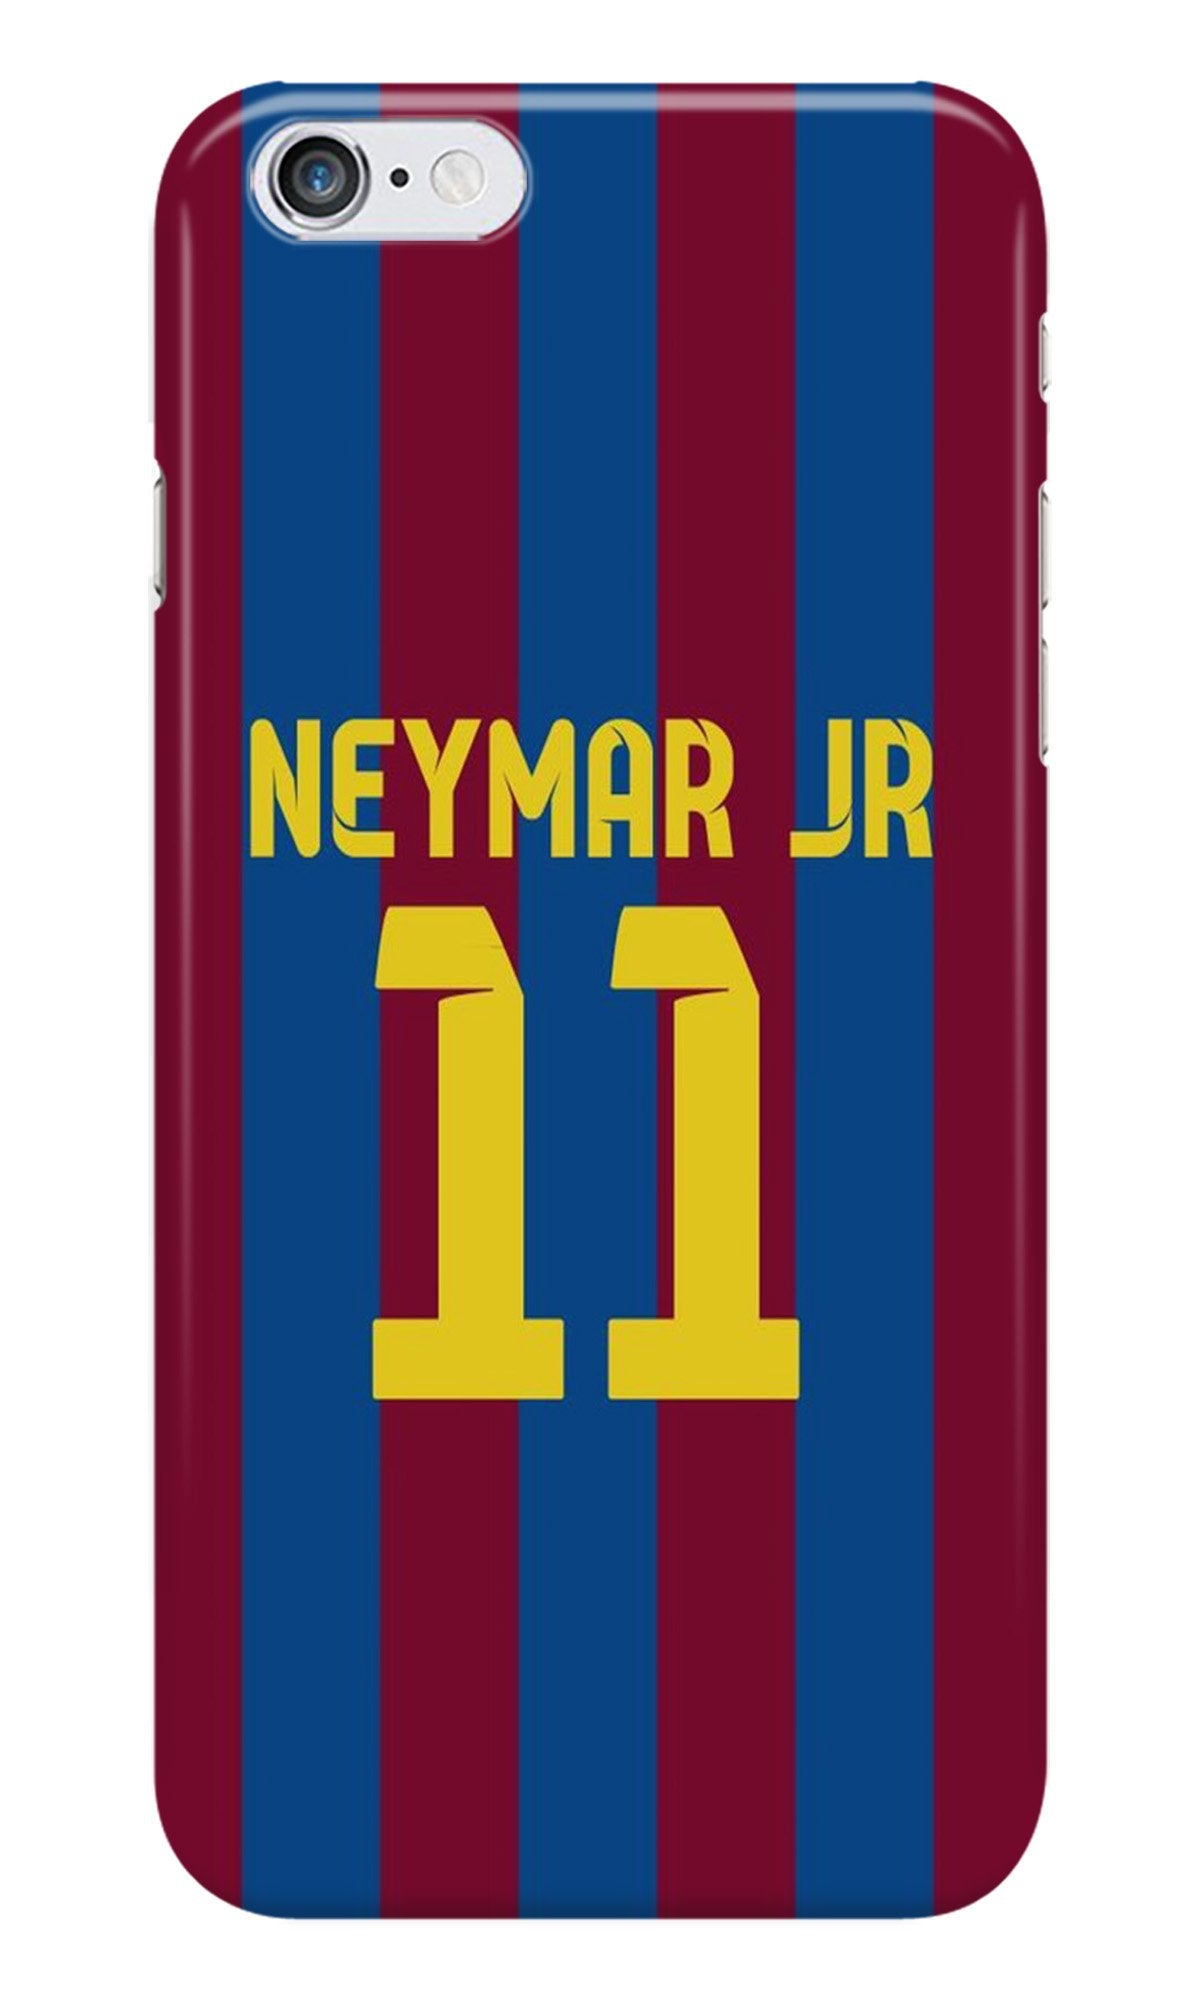 Neymar Jr Case for iPhone 6 Plus/ 6s Plus(Design - 162)